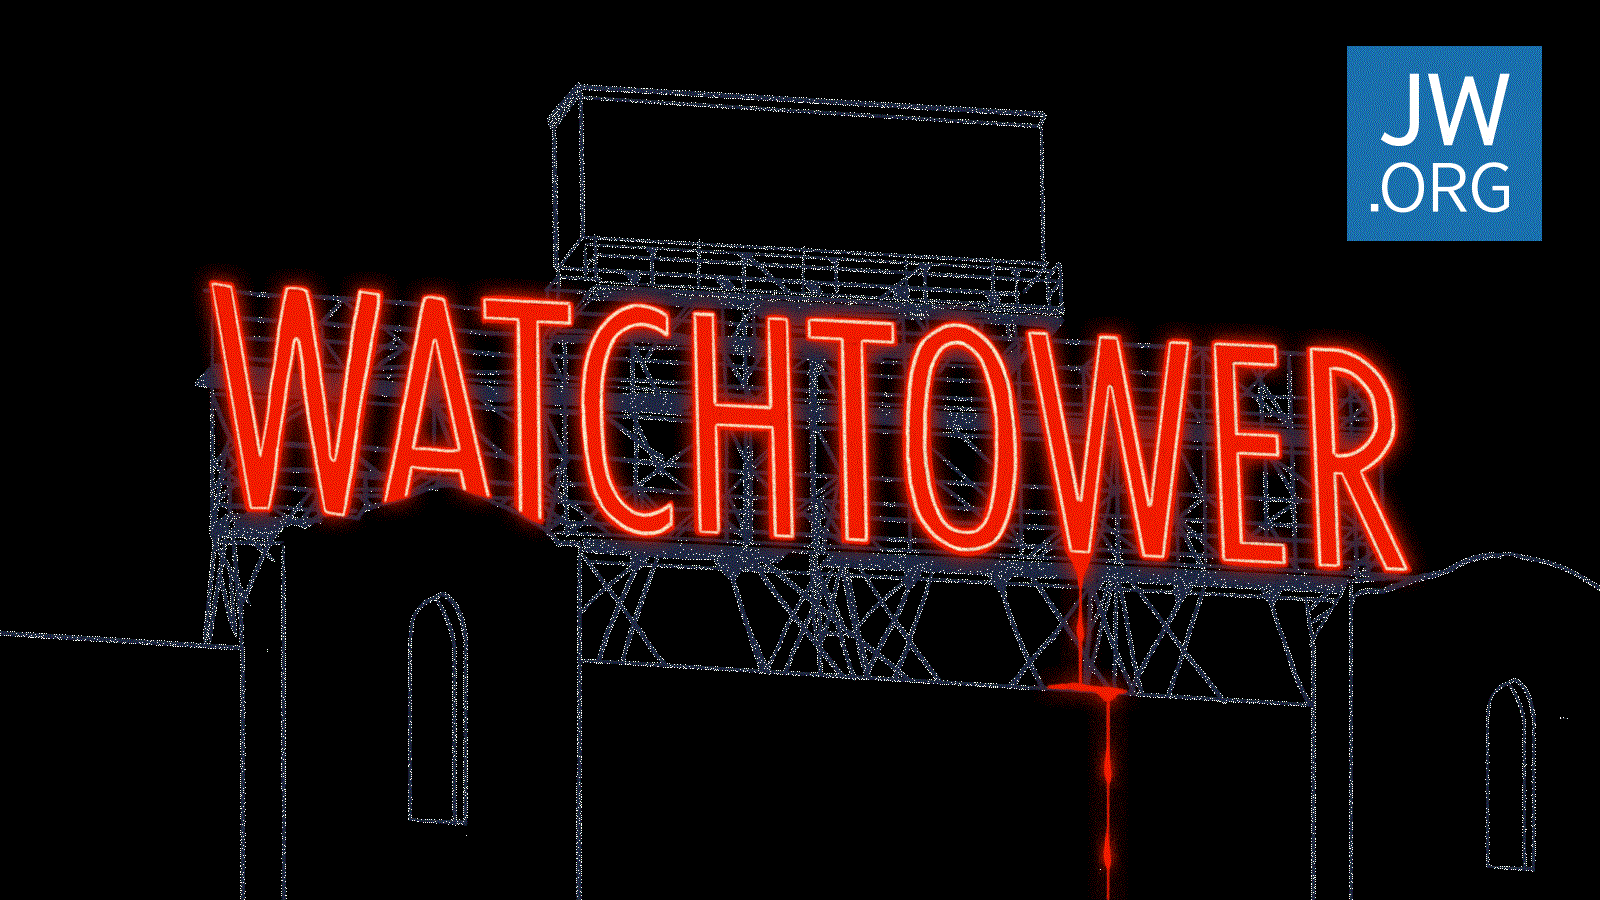 Kindesmissbrauch Der Fall des Wachtturms Detaillierte Dokumente über das interne Rechtsverfahren JW.ORG Kindesmissbrauch Wahrheiten jetzt! Jehovas Zeugen - Geschworene verklagen die Wachtturm-Organisation aufgrund von Kindesmissbrauch zu 35 Millionen US-Dollar